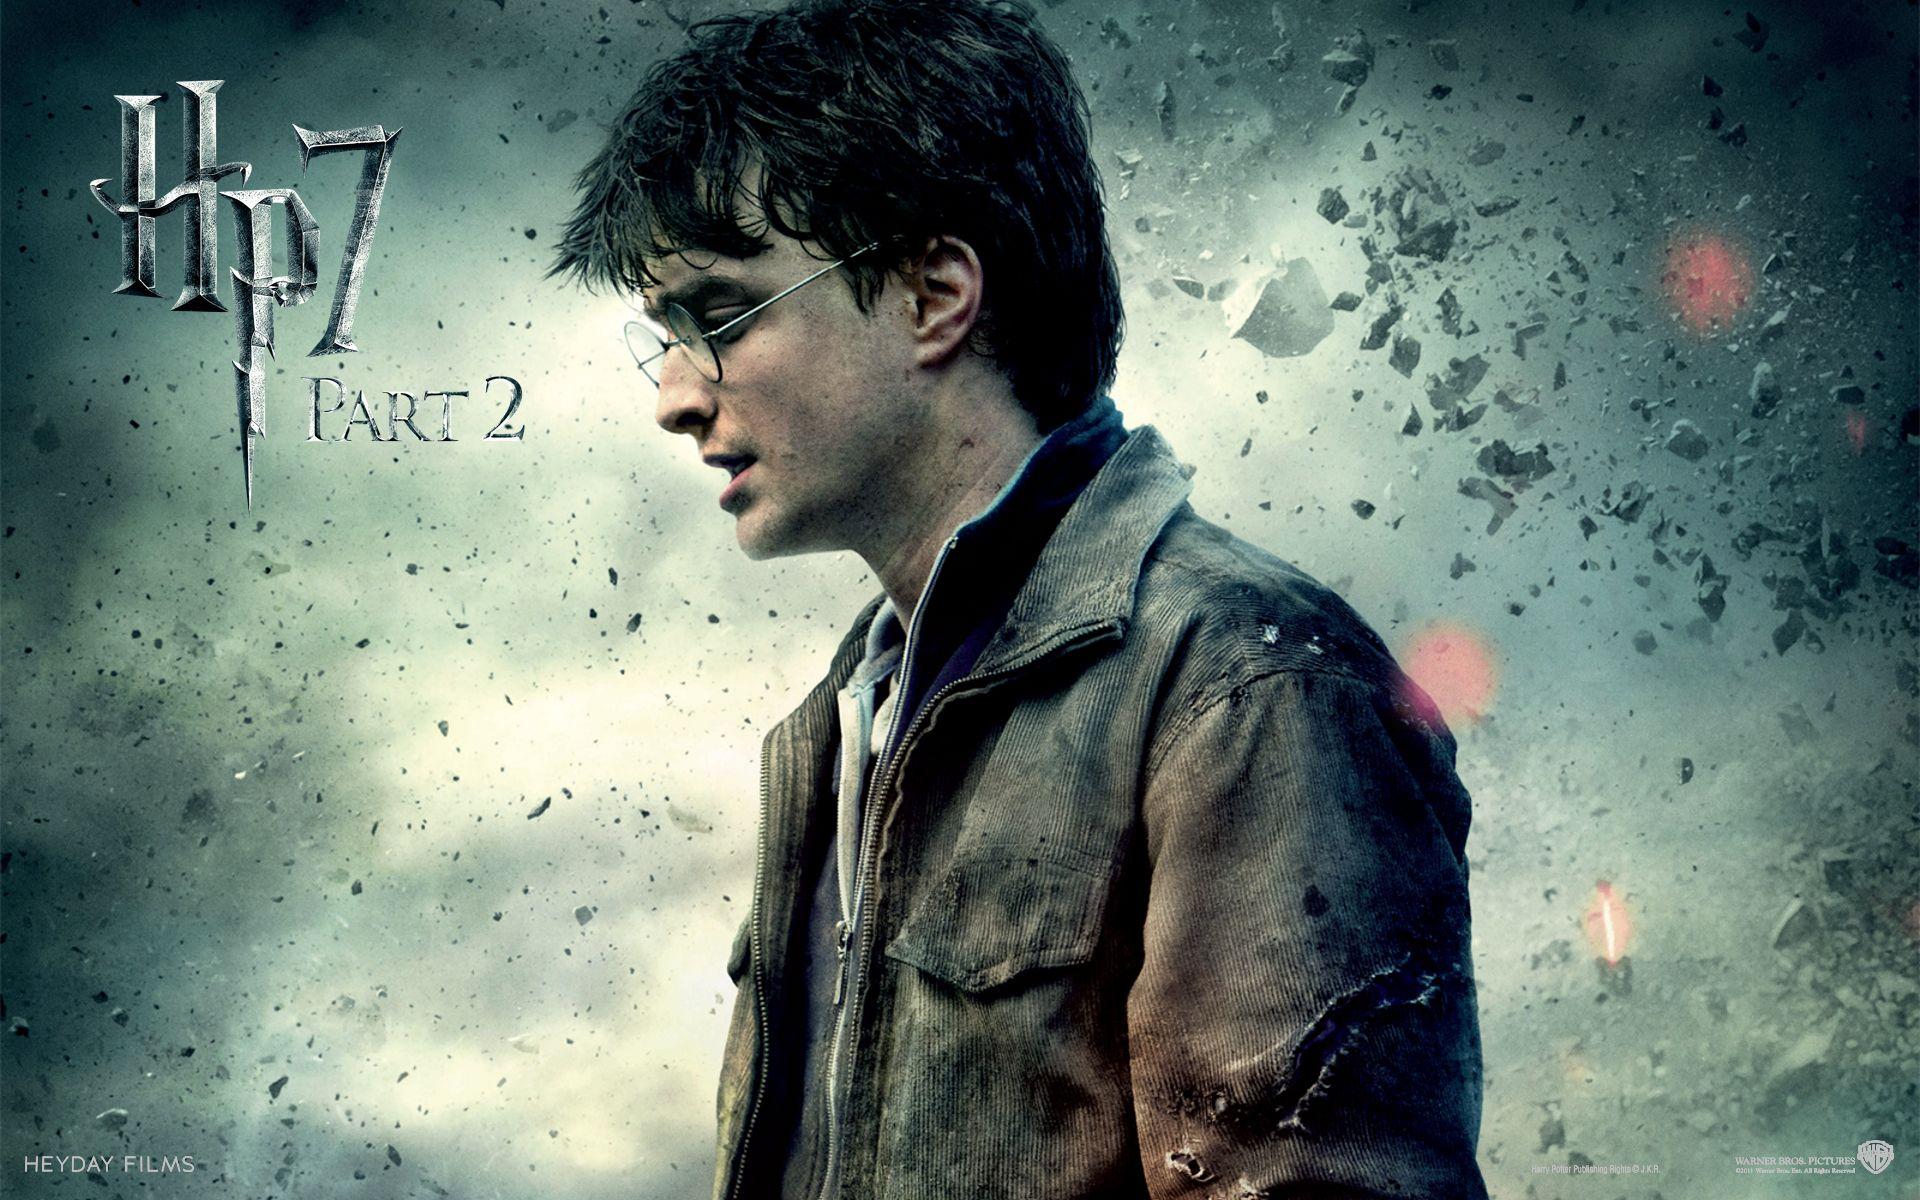 Harry potter 7. Гарри Поттер и дары смерти. Гарри Поттер 7 часть 2. Гарри Поттер и дары смерти: часть II фильм 2011. Гарри Поттер в профиль.